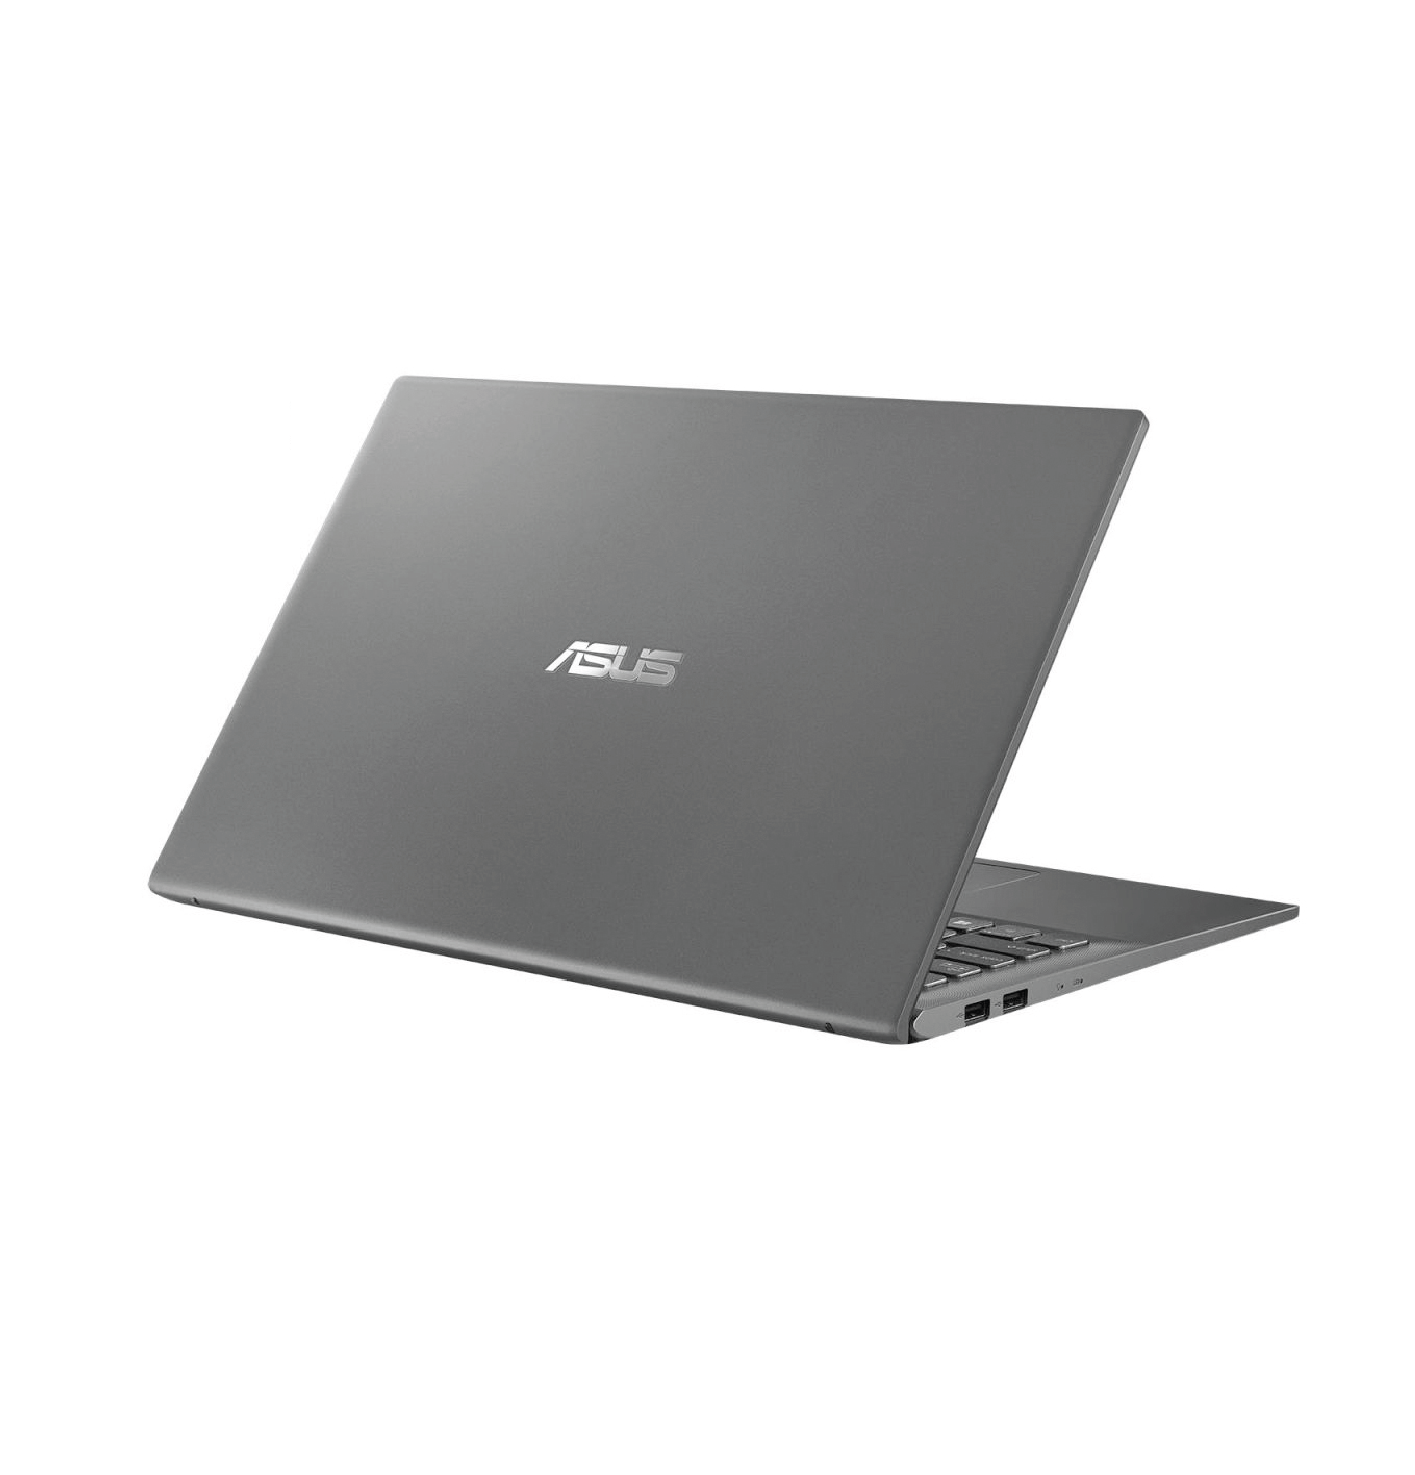 لپ تاپ ایسوس 15 اینچ  Asus VivoBook 15 R564FL : Core i7-10510U / 8GB RAM / 1TB HDD + 128GB SSD / 2GB MX250 thumb 451